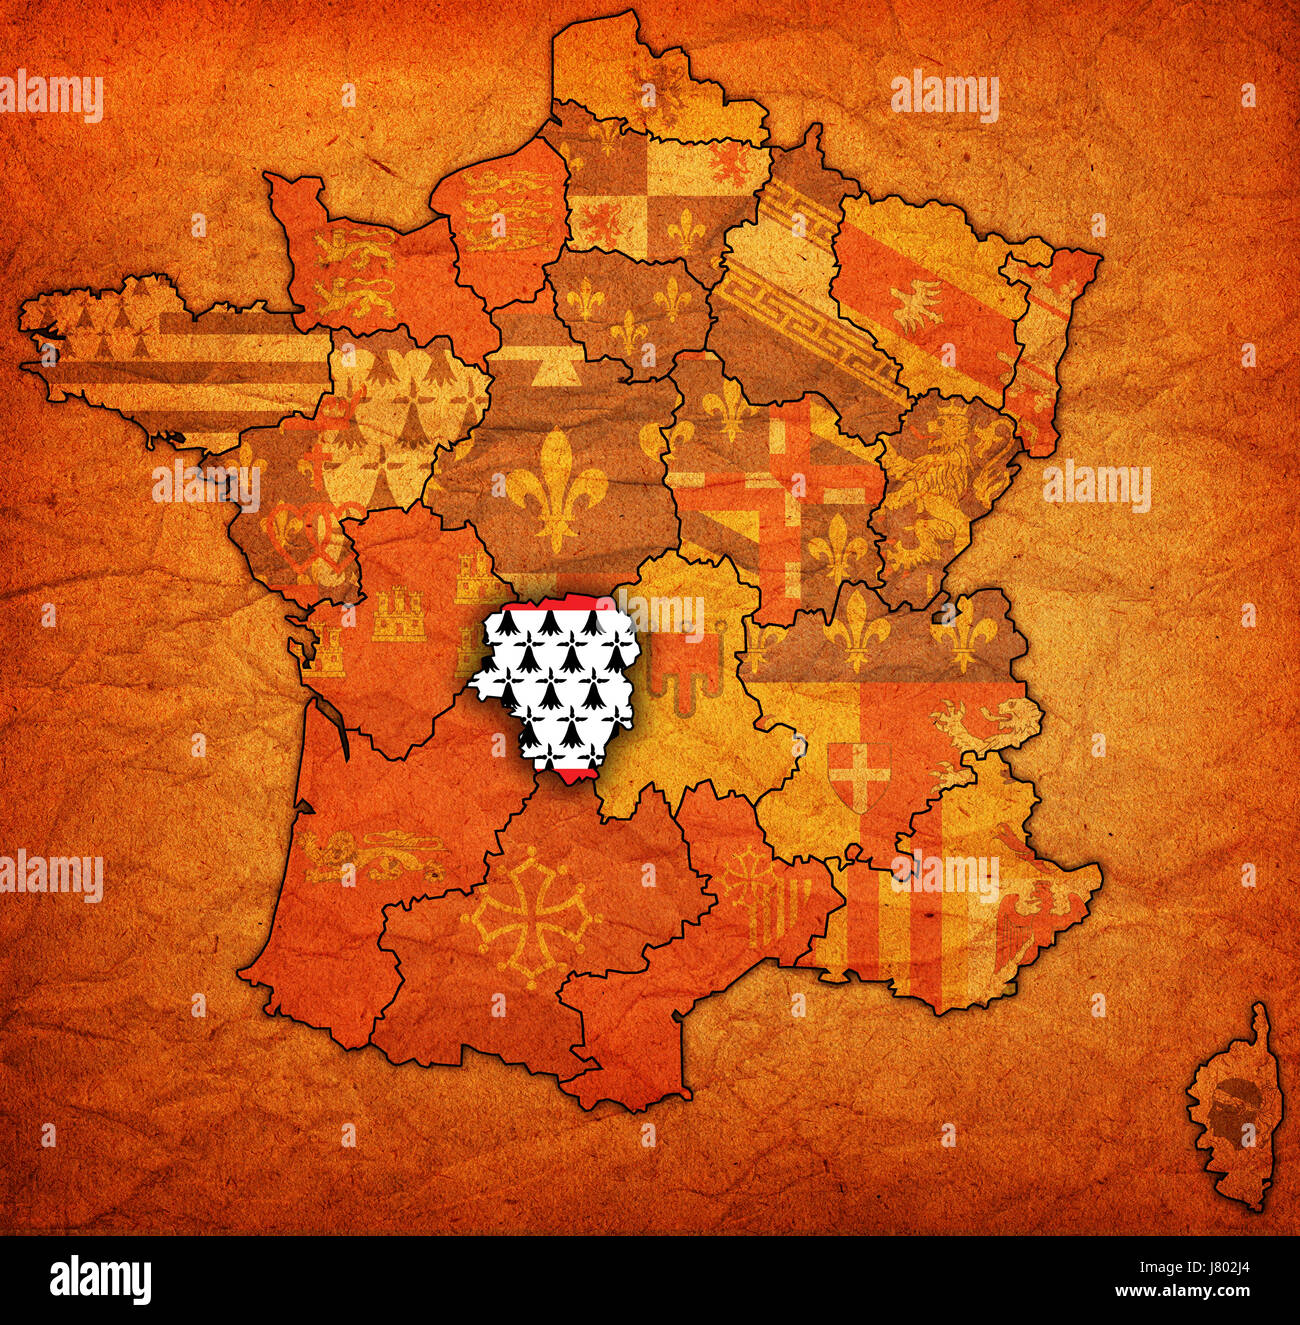 Frankreich Flagge Region Geographie-Abteilung Atlas Karte der politischen Welt Stockfoto